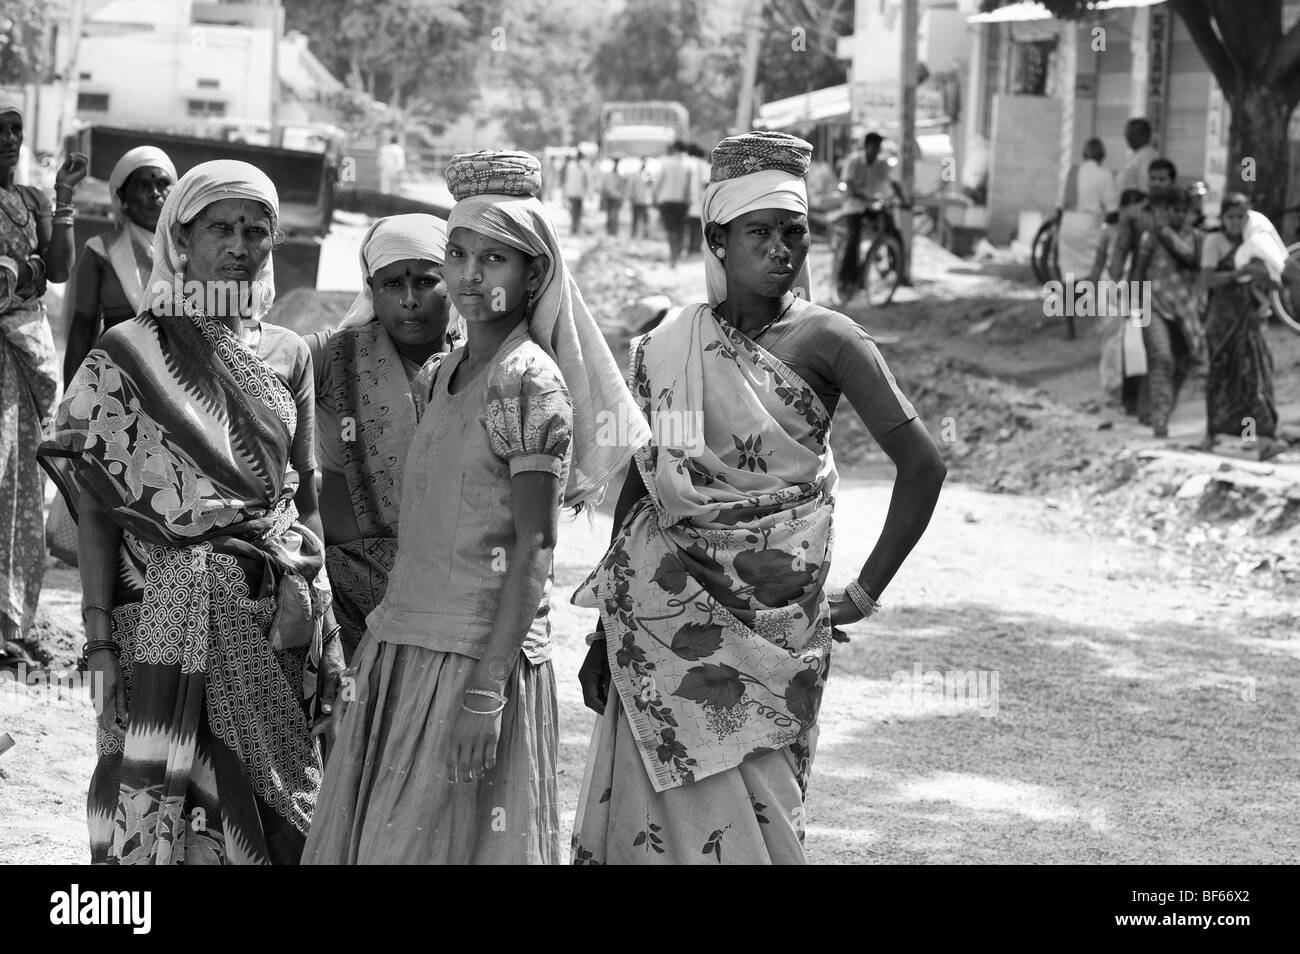 Les femmes indiennes qui travaillent sur les routes de Puttaparthi, Andhra Pradesh, Inde. Monochrome Banque D'Images